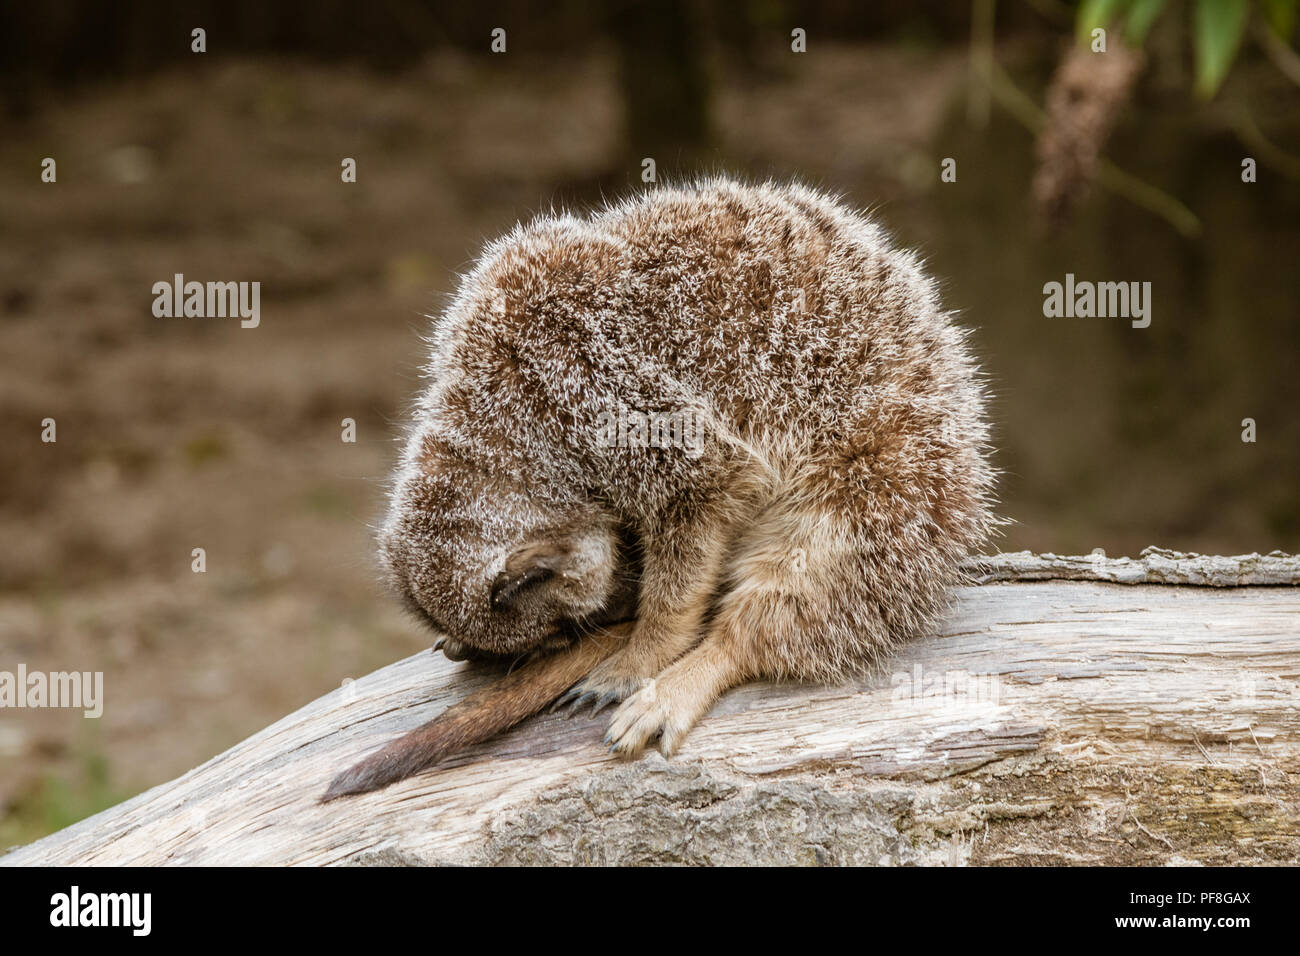 Sleeping Meerkat. Seduto in posizione verticale con la testa inchinata, il simpatico meerkat è addormentato Foto Stock